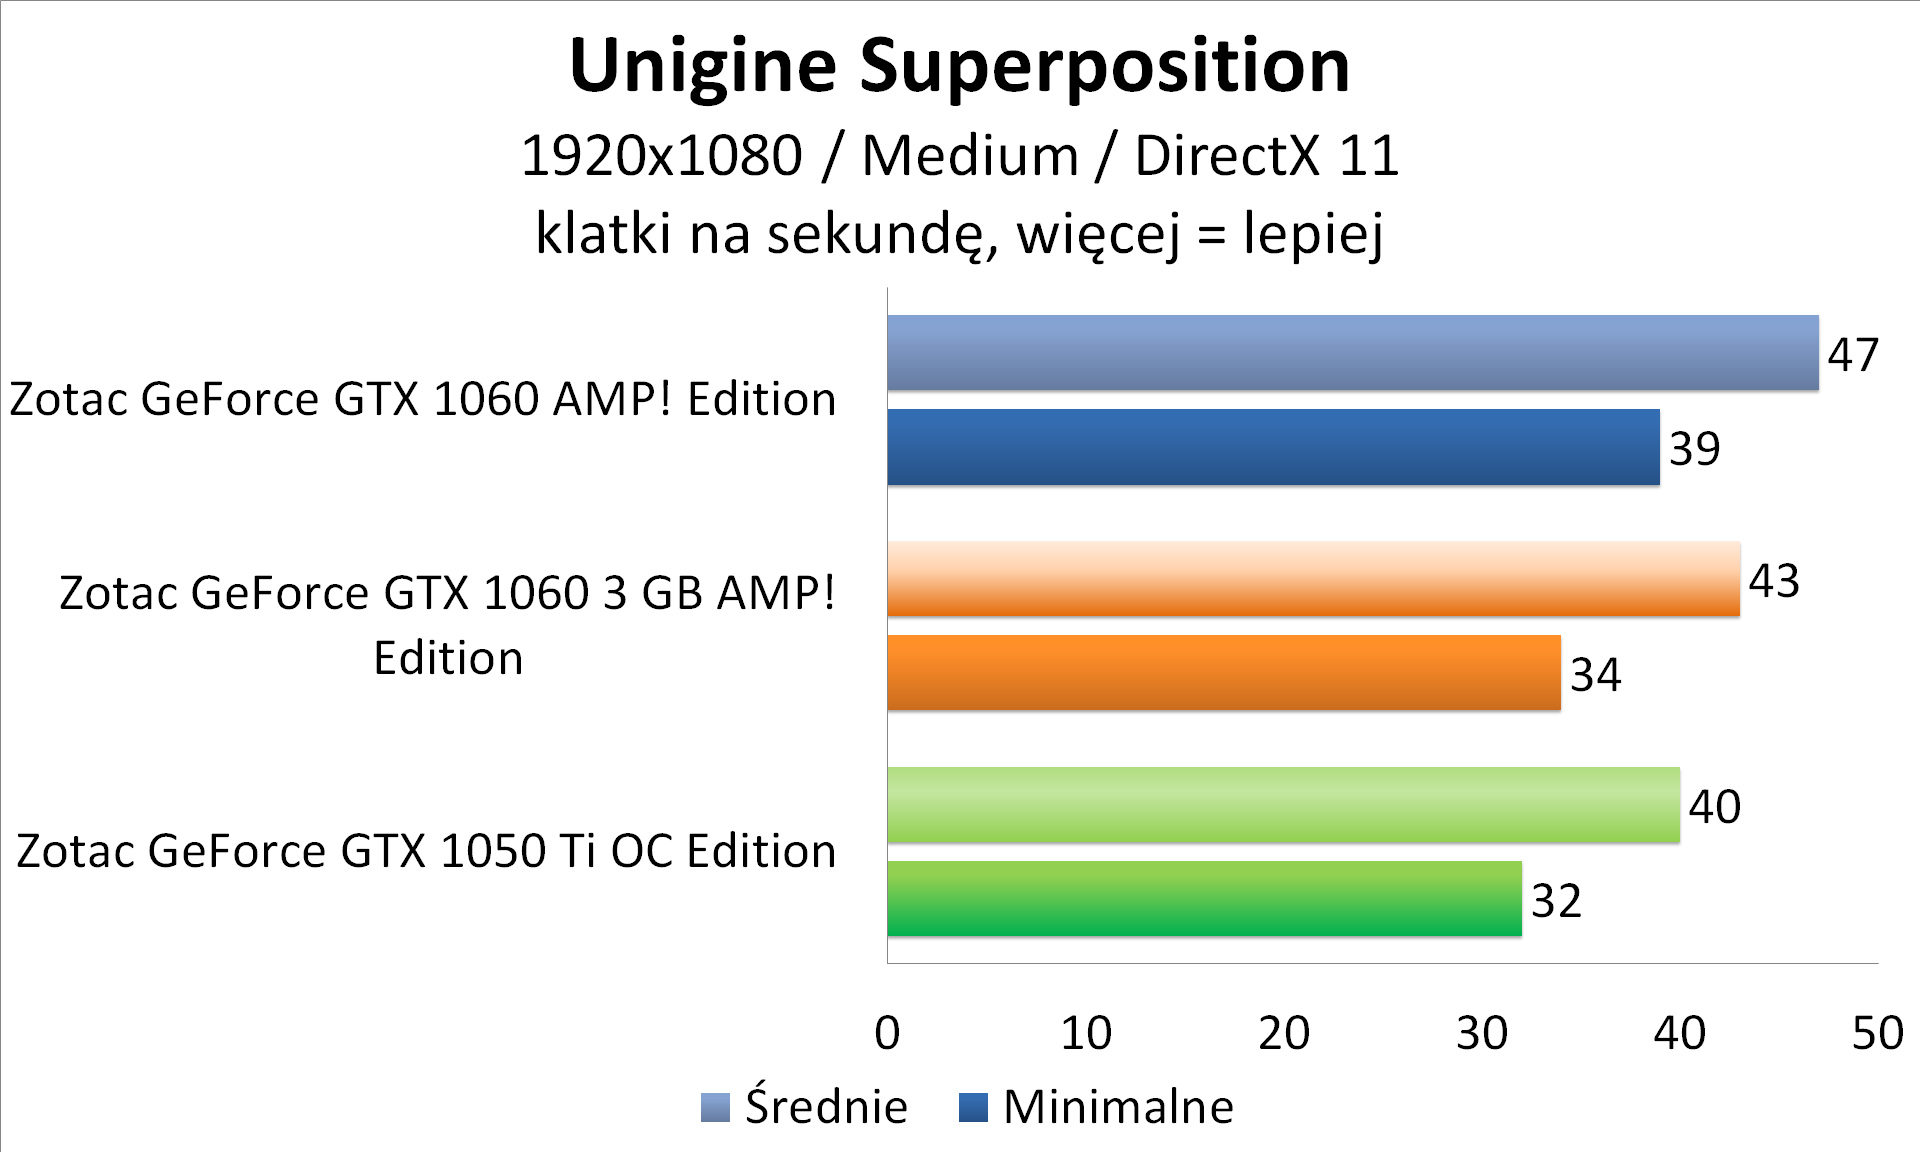 Zotac GeForce GTX 1050 Ti OC Edition - Unigine Superposition